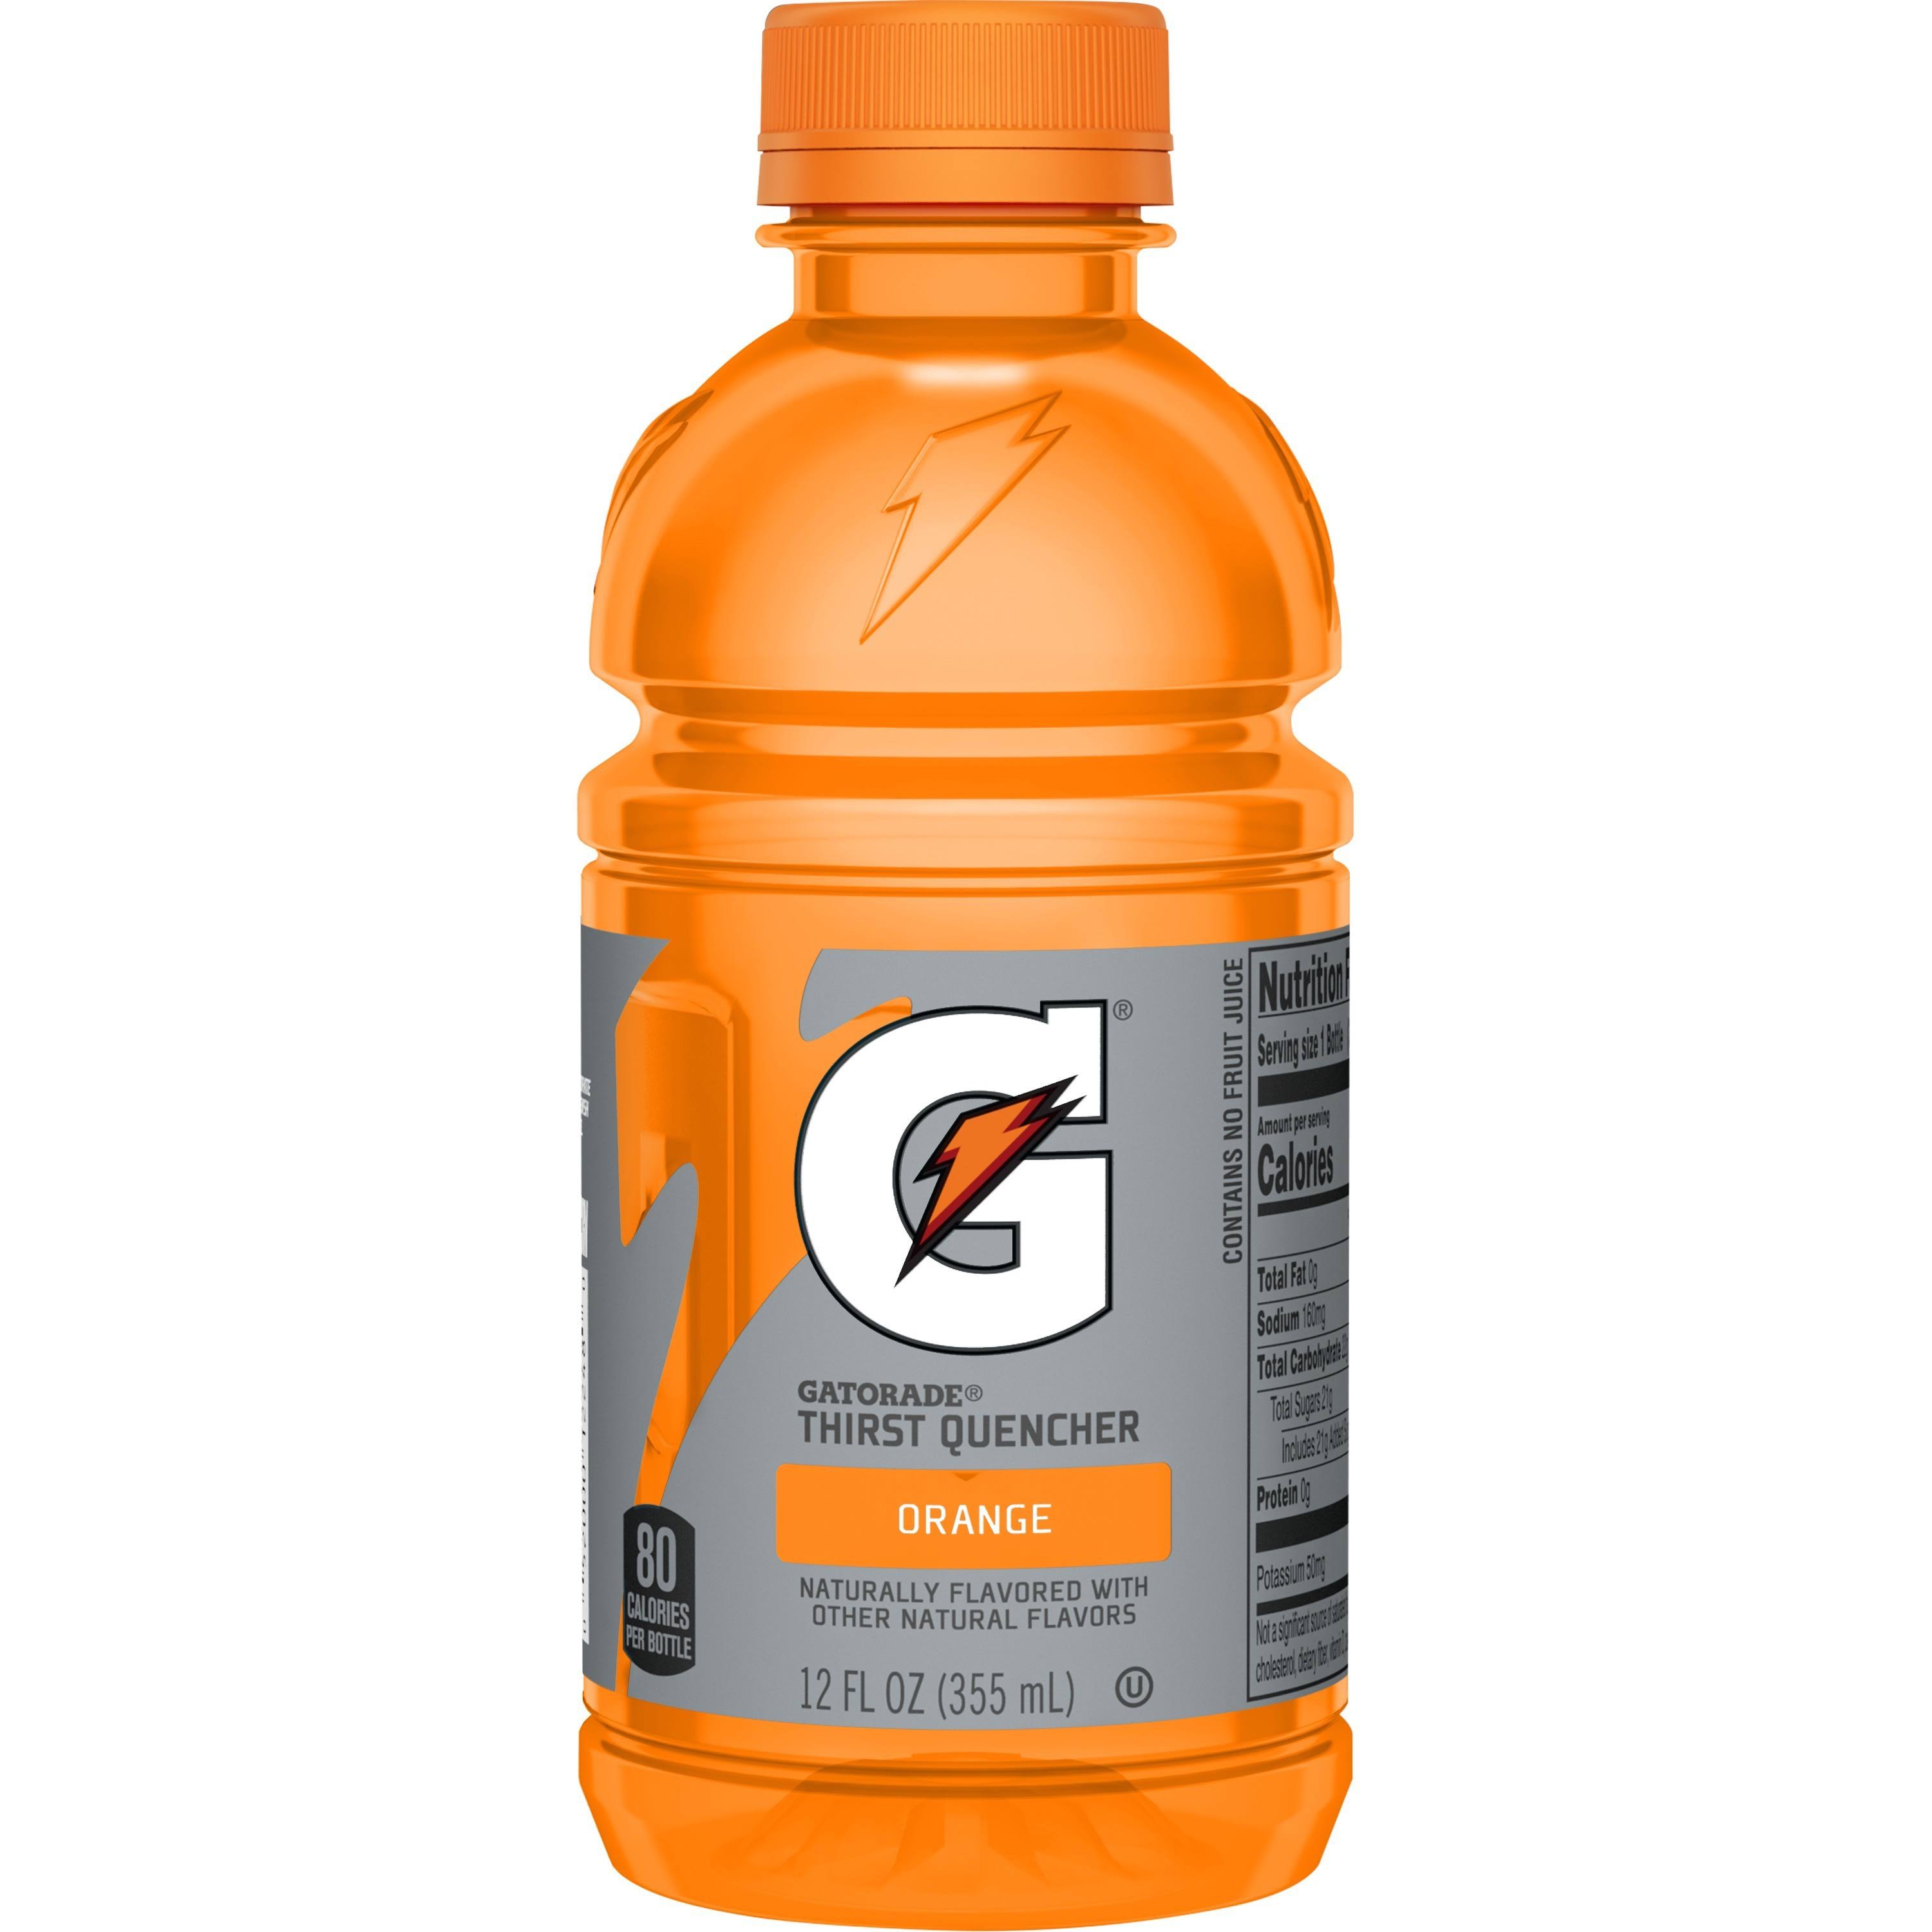 Gatorade Thirst Quencher, Orange - 12 fl oz